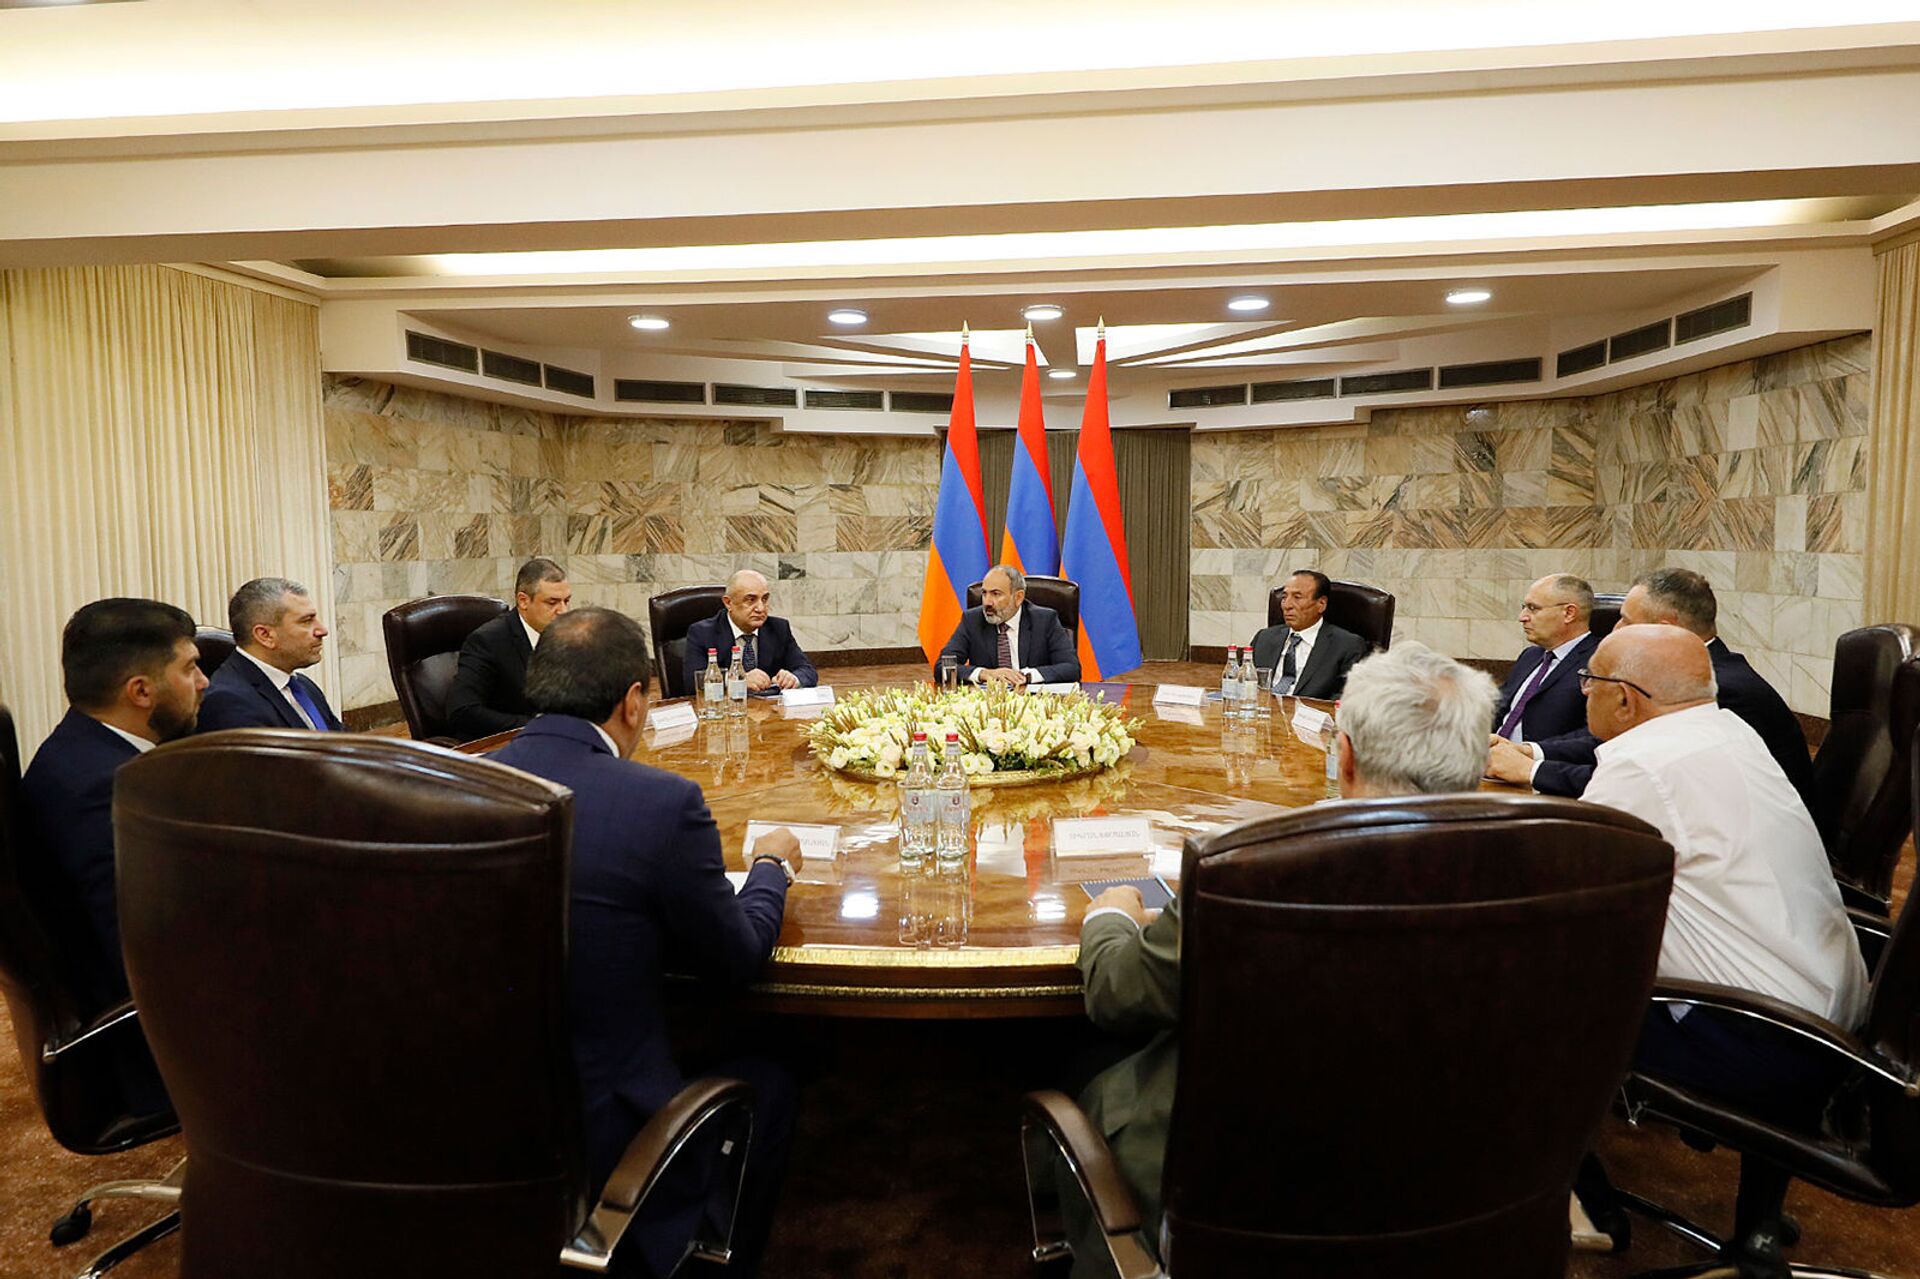 Пашинян встретился с главами около десятка партий для создания формата сотрудничества  - Sputnik Армения, 1920, 09.07.2021